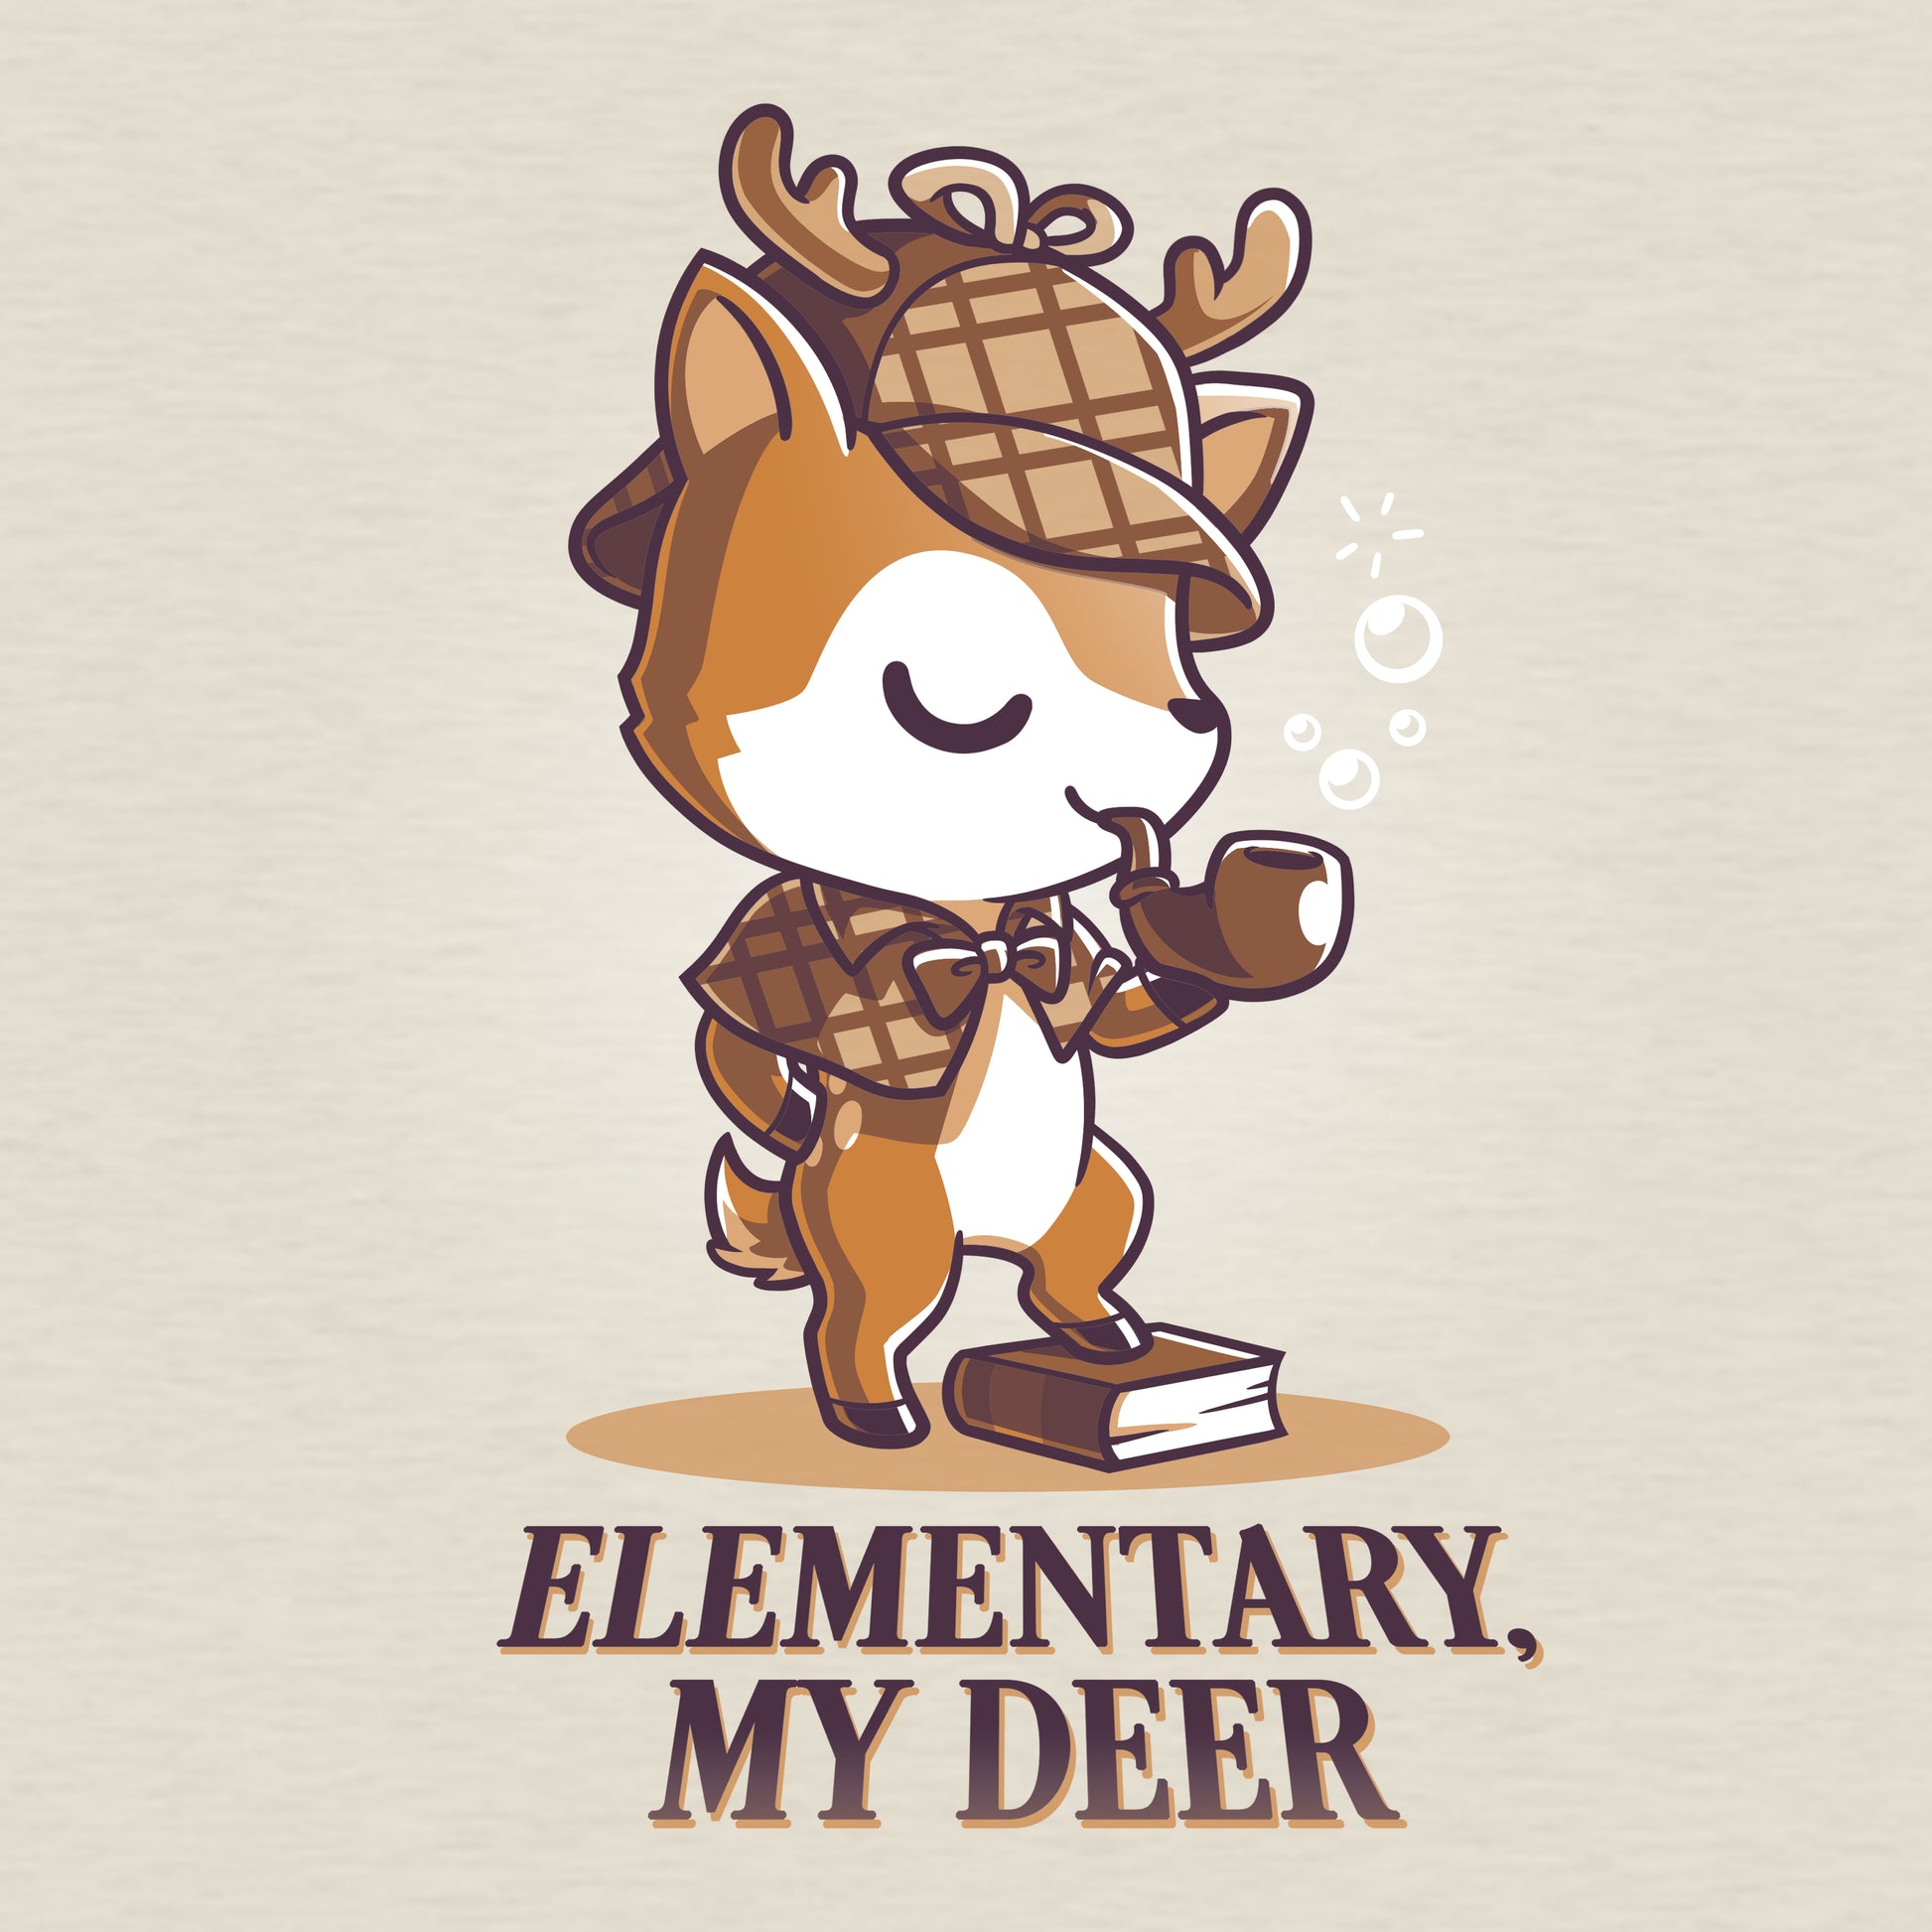 Keywords: TeeTurtle's Elementary, My Deer T-shirt.